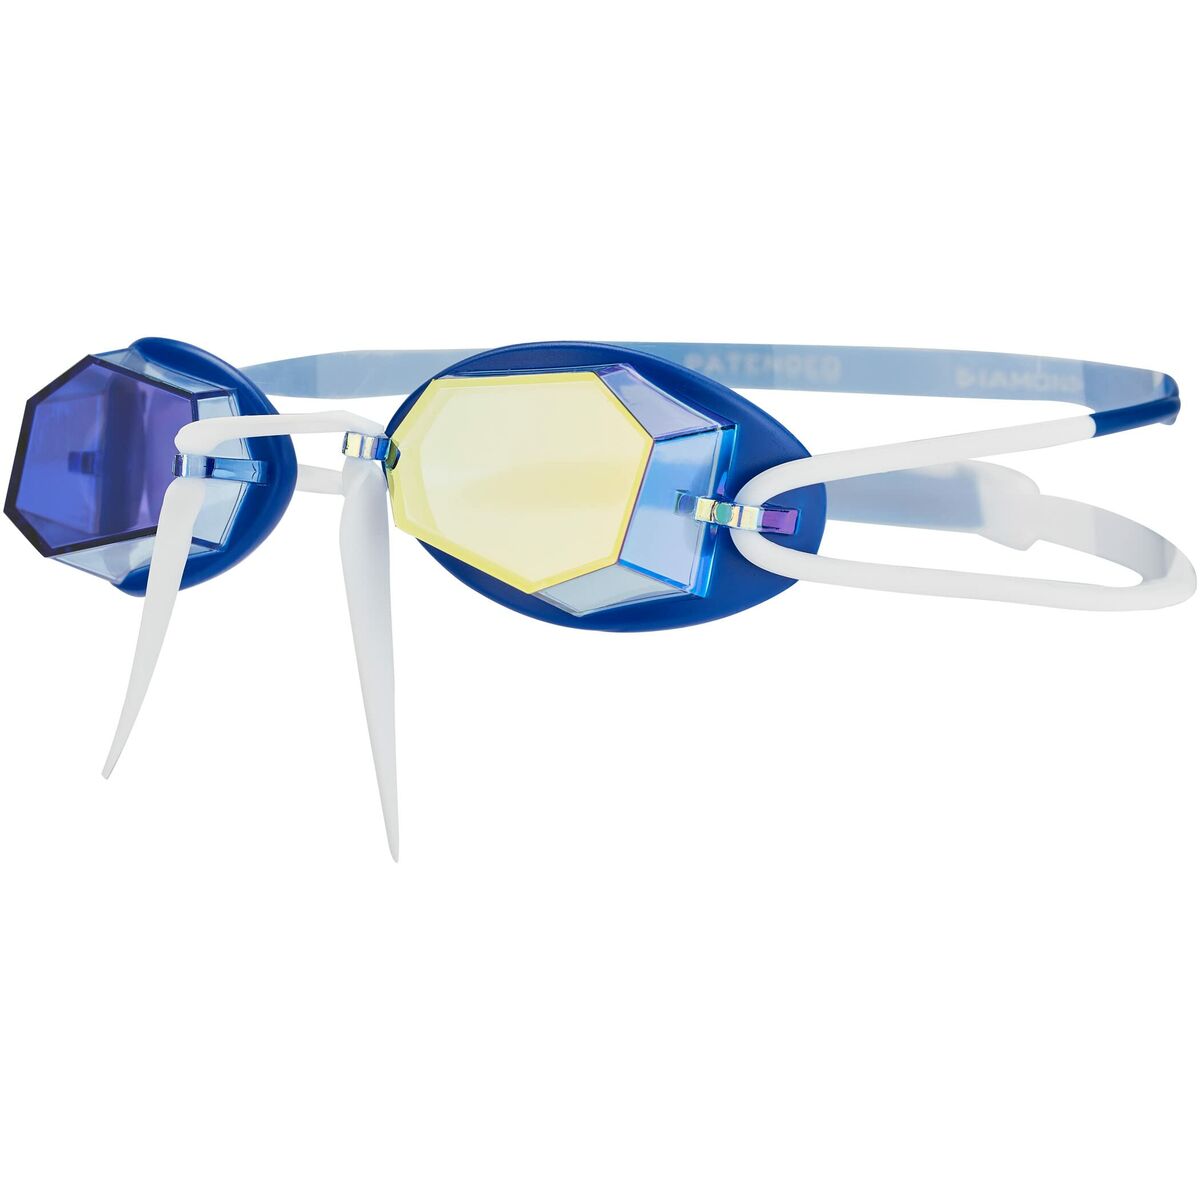 Swimming Goggles Zoggs Diamond Mirror Blue White One size